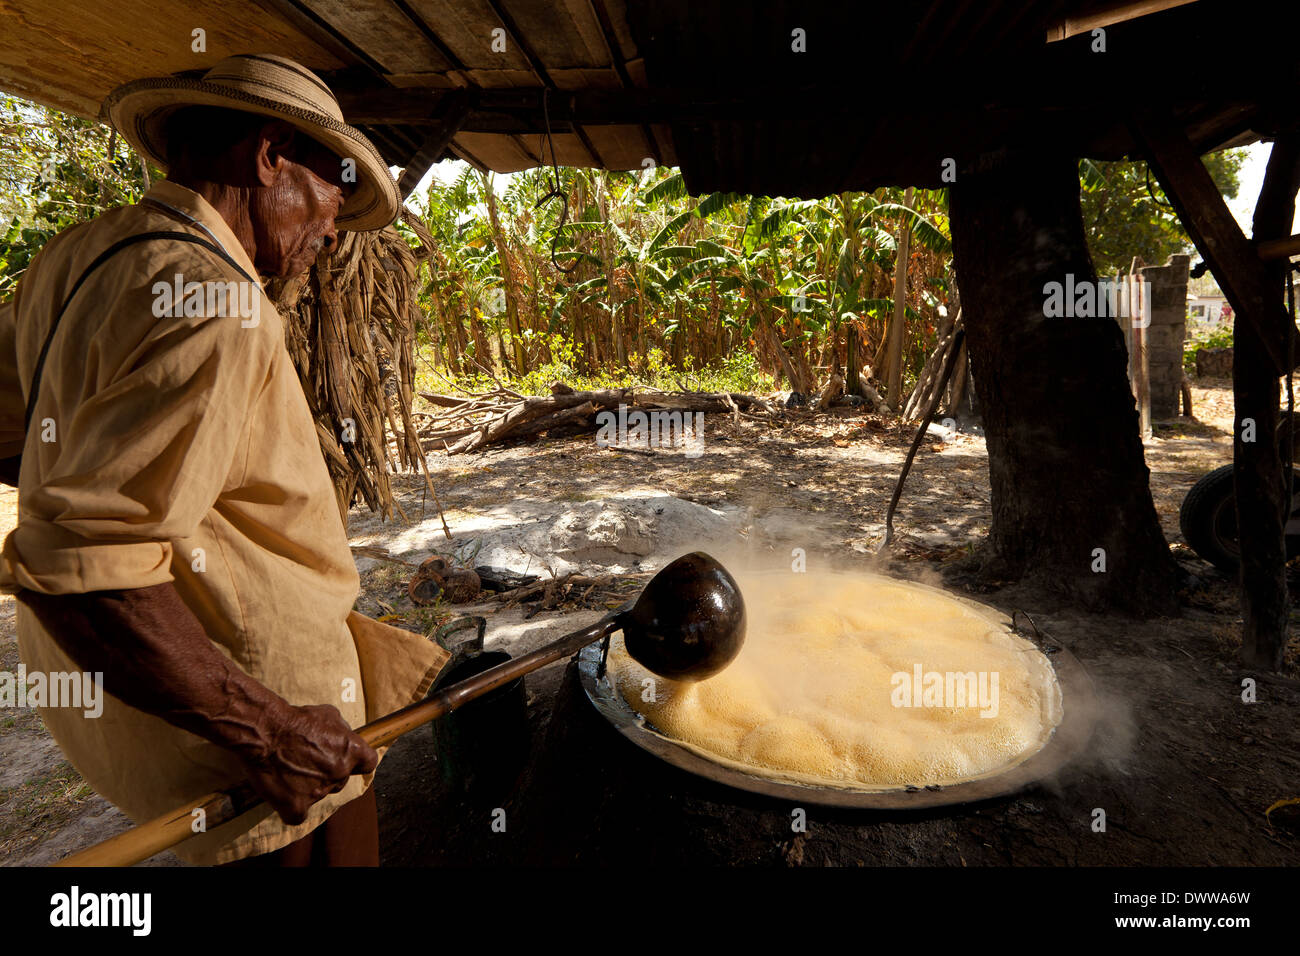 Moises Ibarra boils spremuta di canna da zucchero per fare il raspadura, una torta di zucchero, nella provincia di Cocle, Repubblica di Panama, America Centrale. Foto Stock